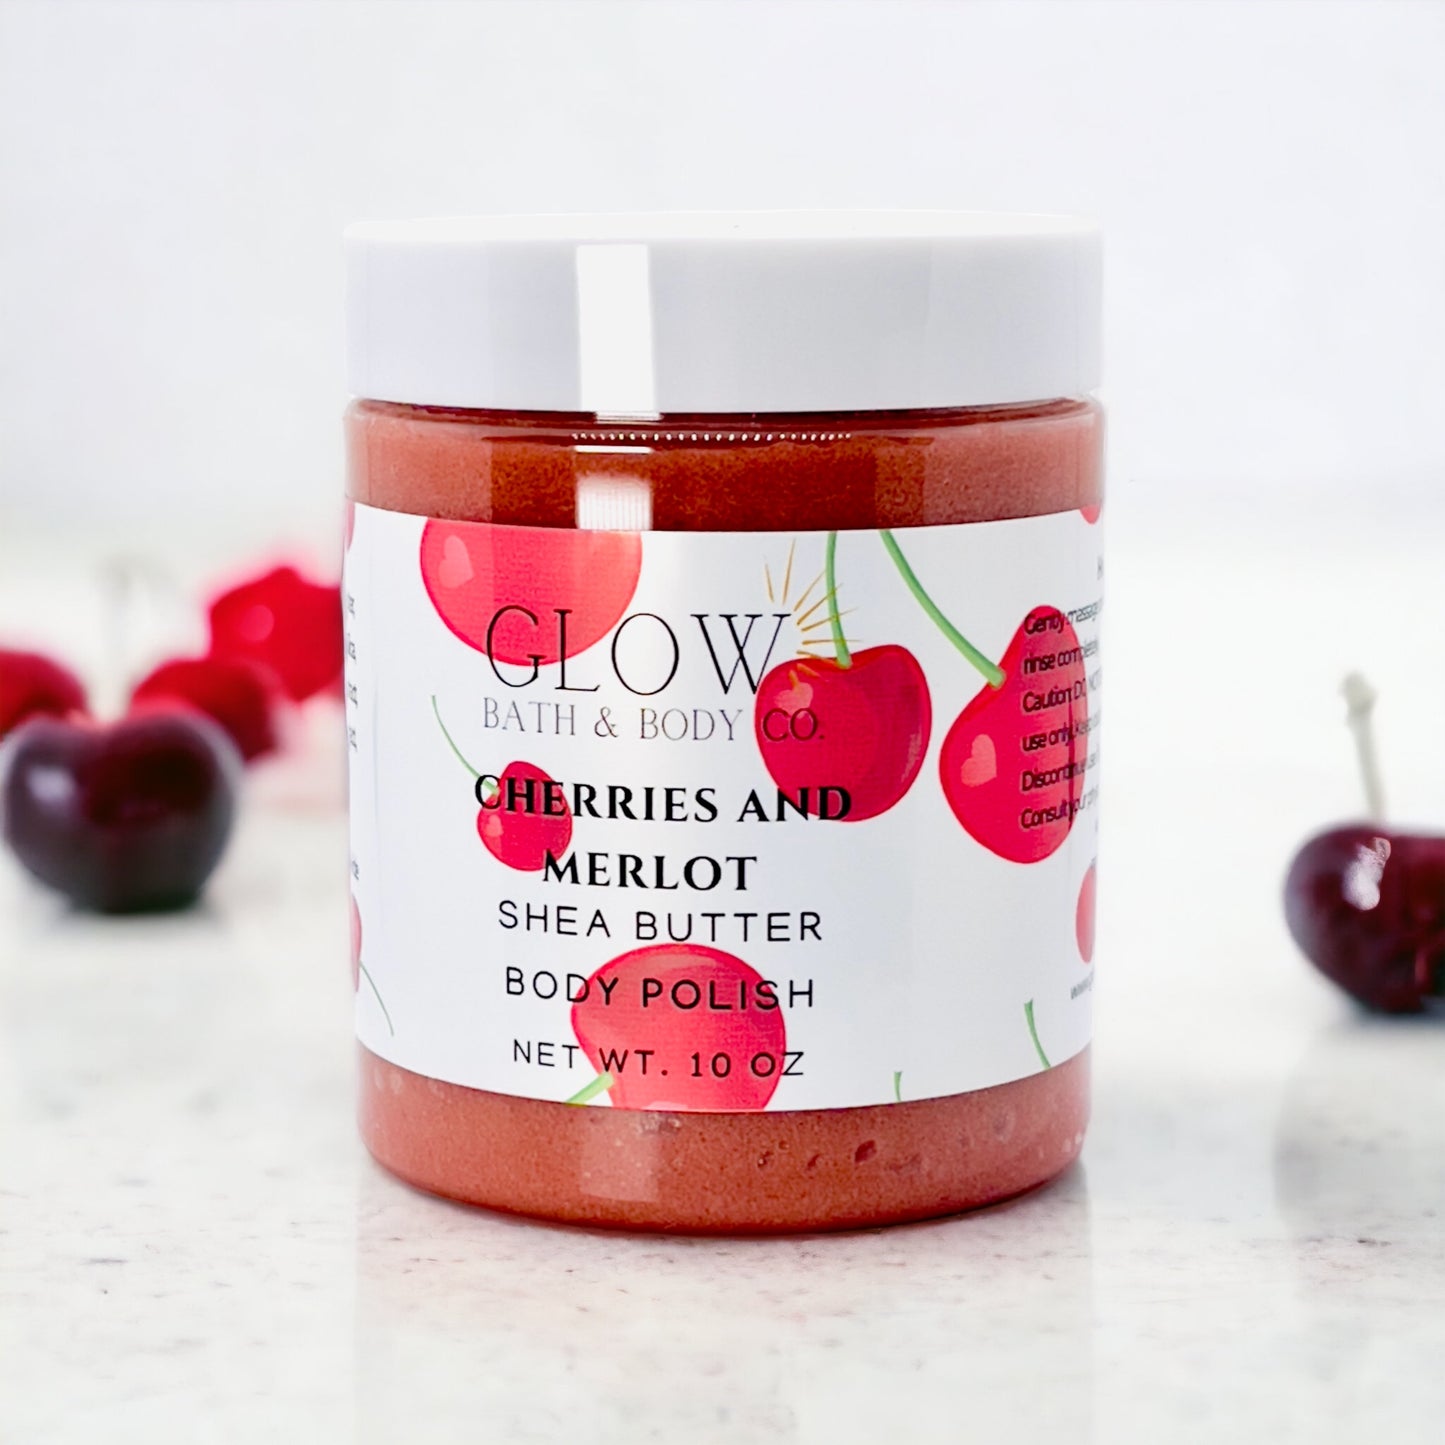 Cherries and Merlot Body Polish